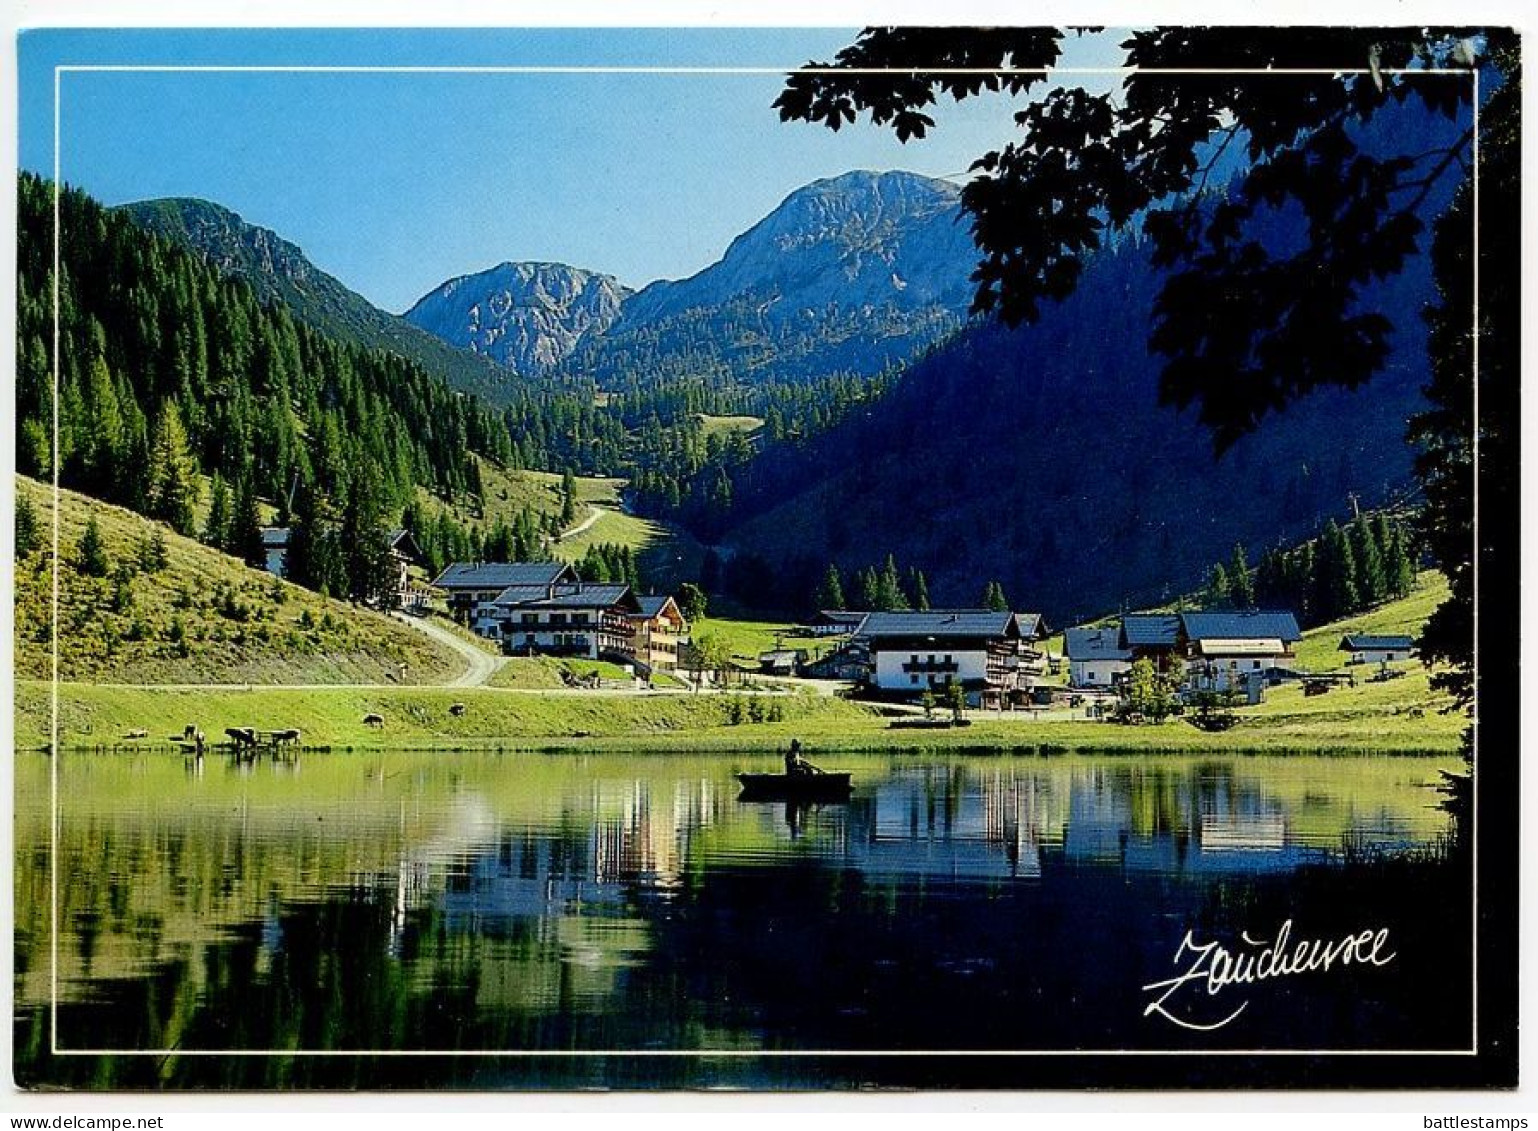 Austria 1998 Postcard Zauchensee - Scenic View; Altenmarkt im Pongau Cancel; 6.50s Dragon of Klagenfurt Stamp